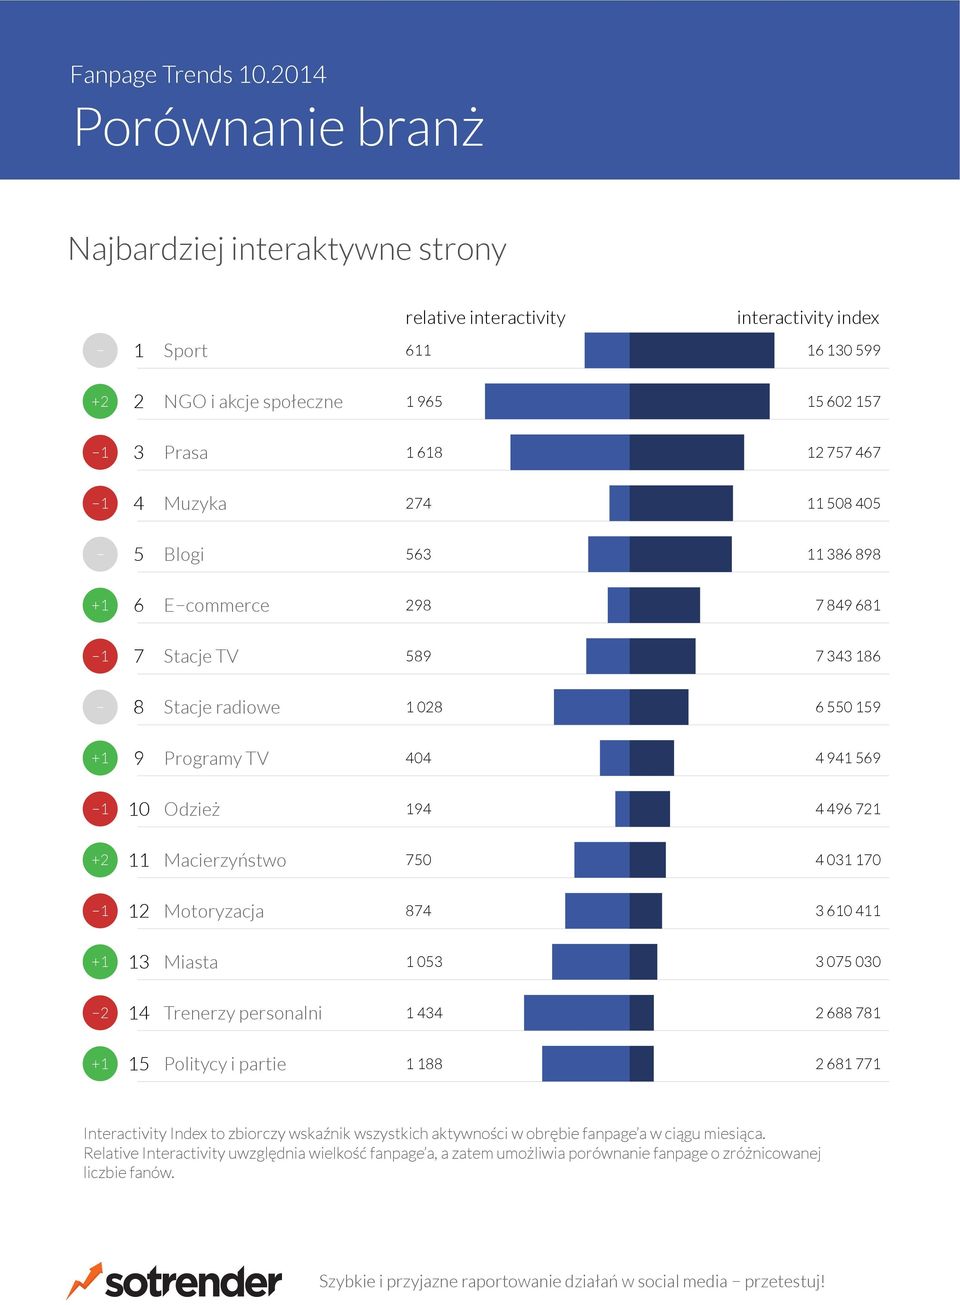 partie Interactivity Index to zbiorczy wskaźnik wszystkich aktywności w obrębie fanpage a w ciągu miesiąca.